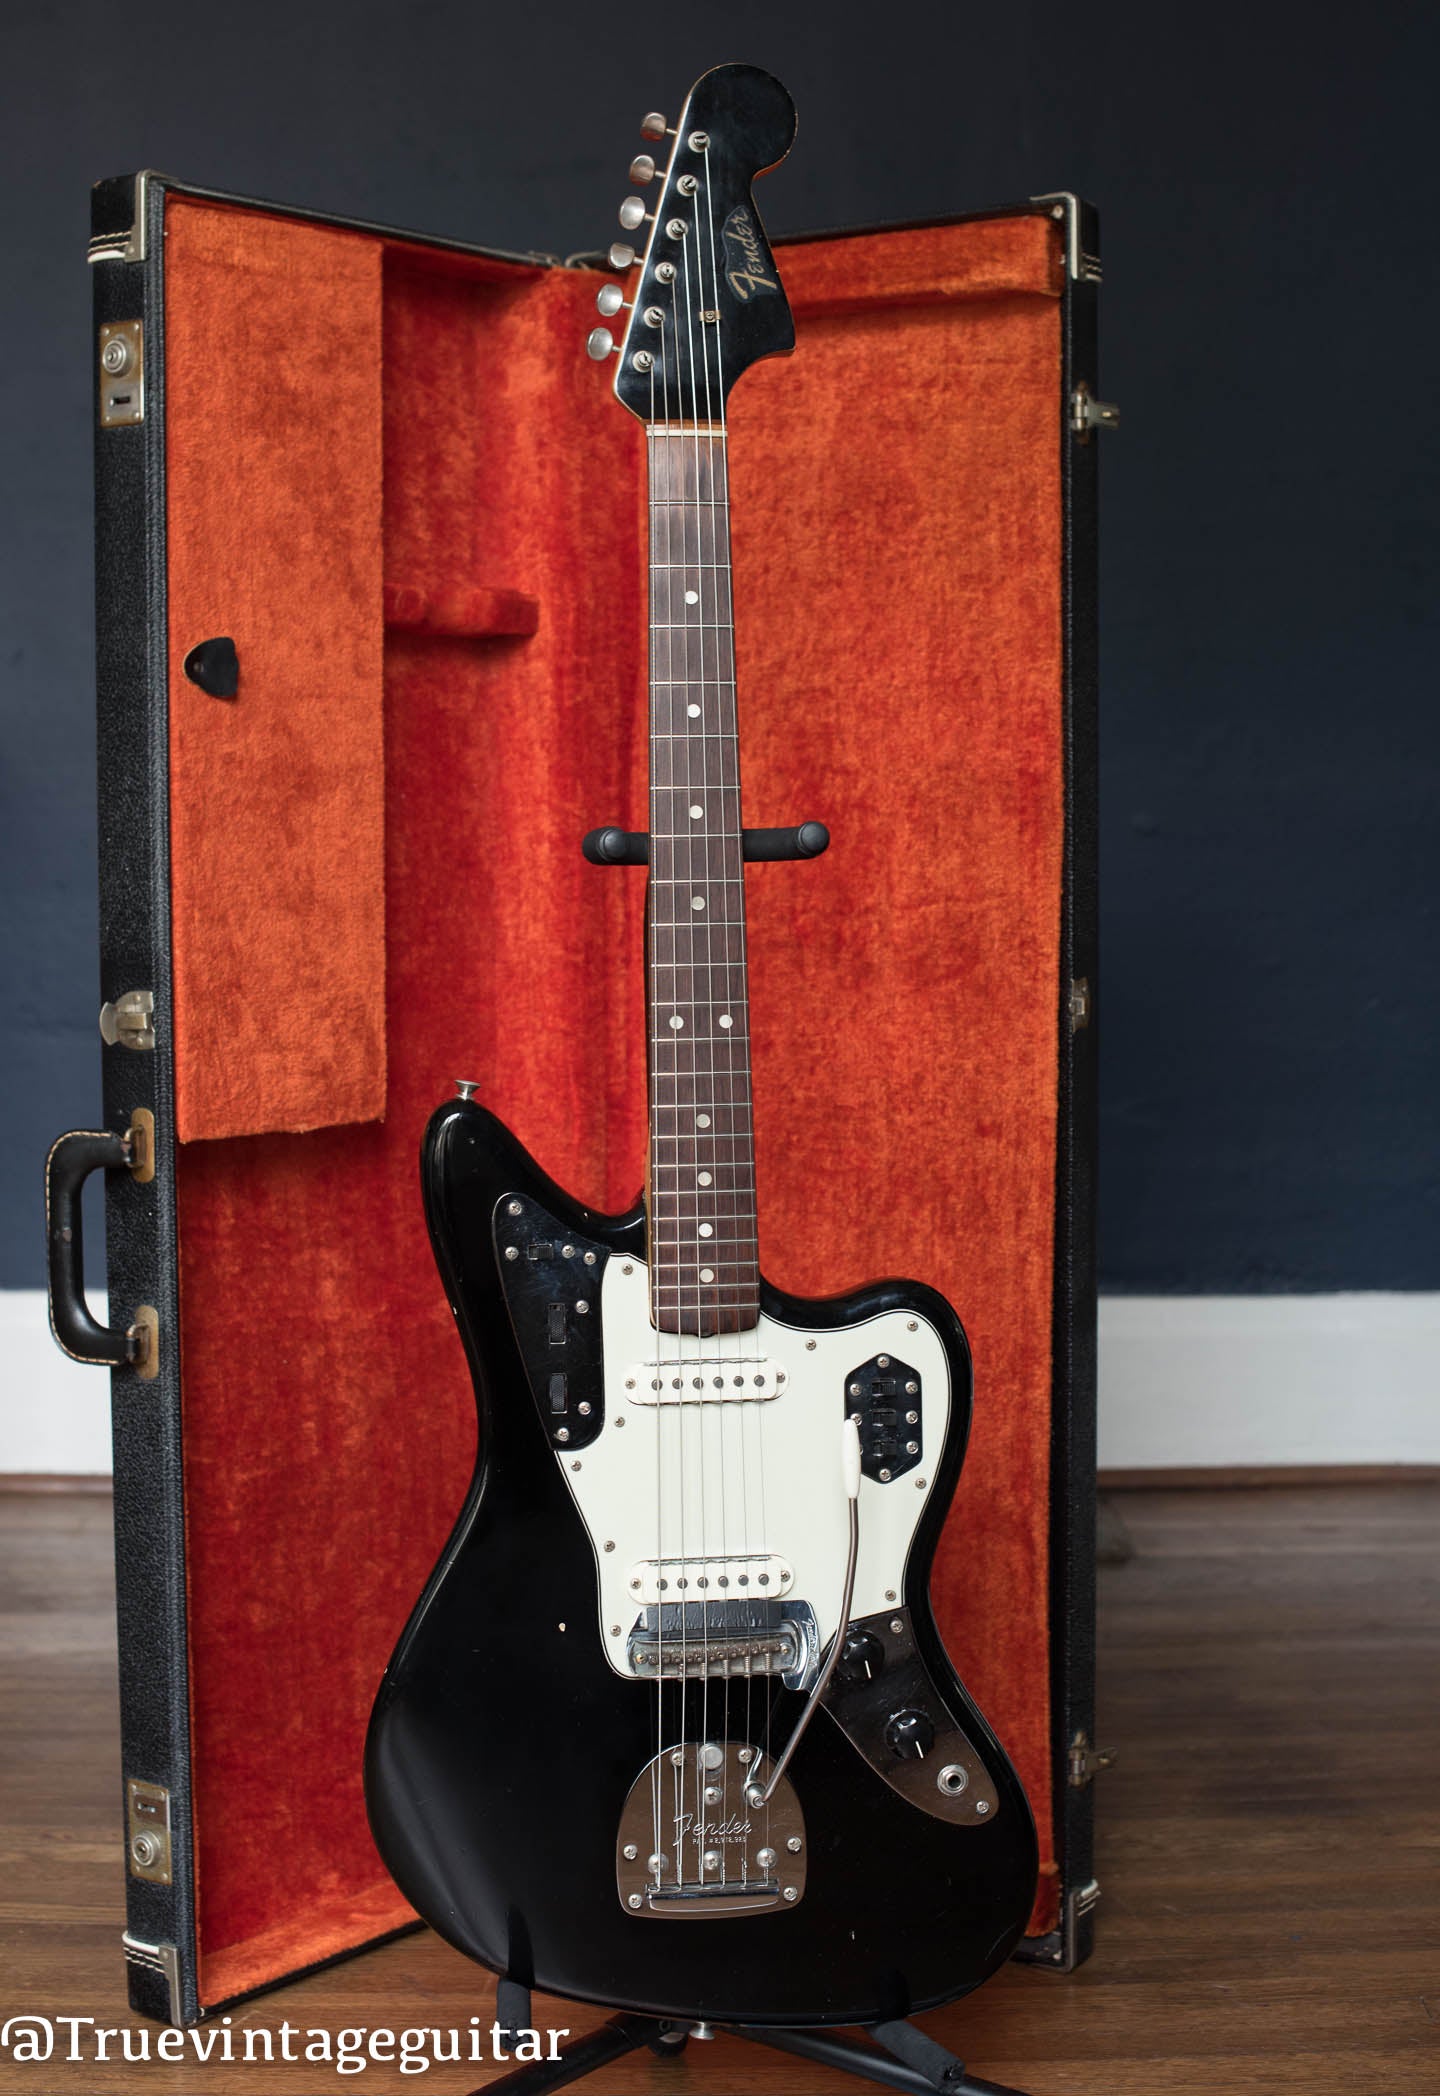 Vintage 1964 Fender Jaguar Black matching headstock